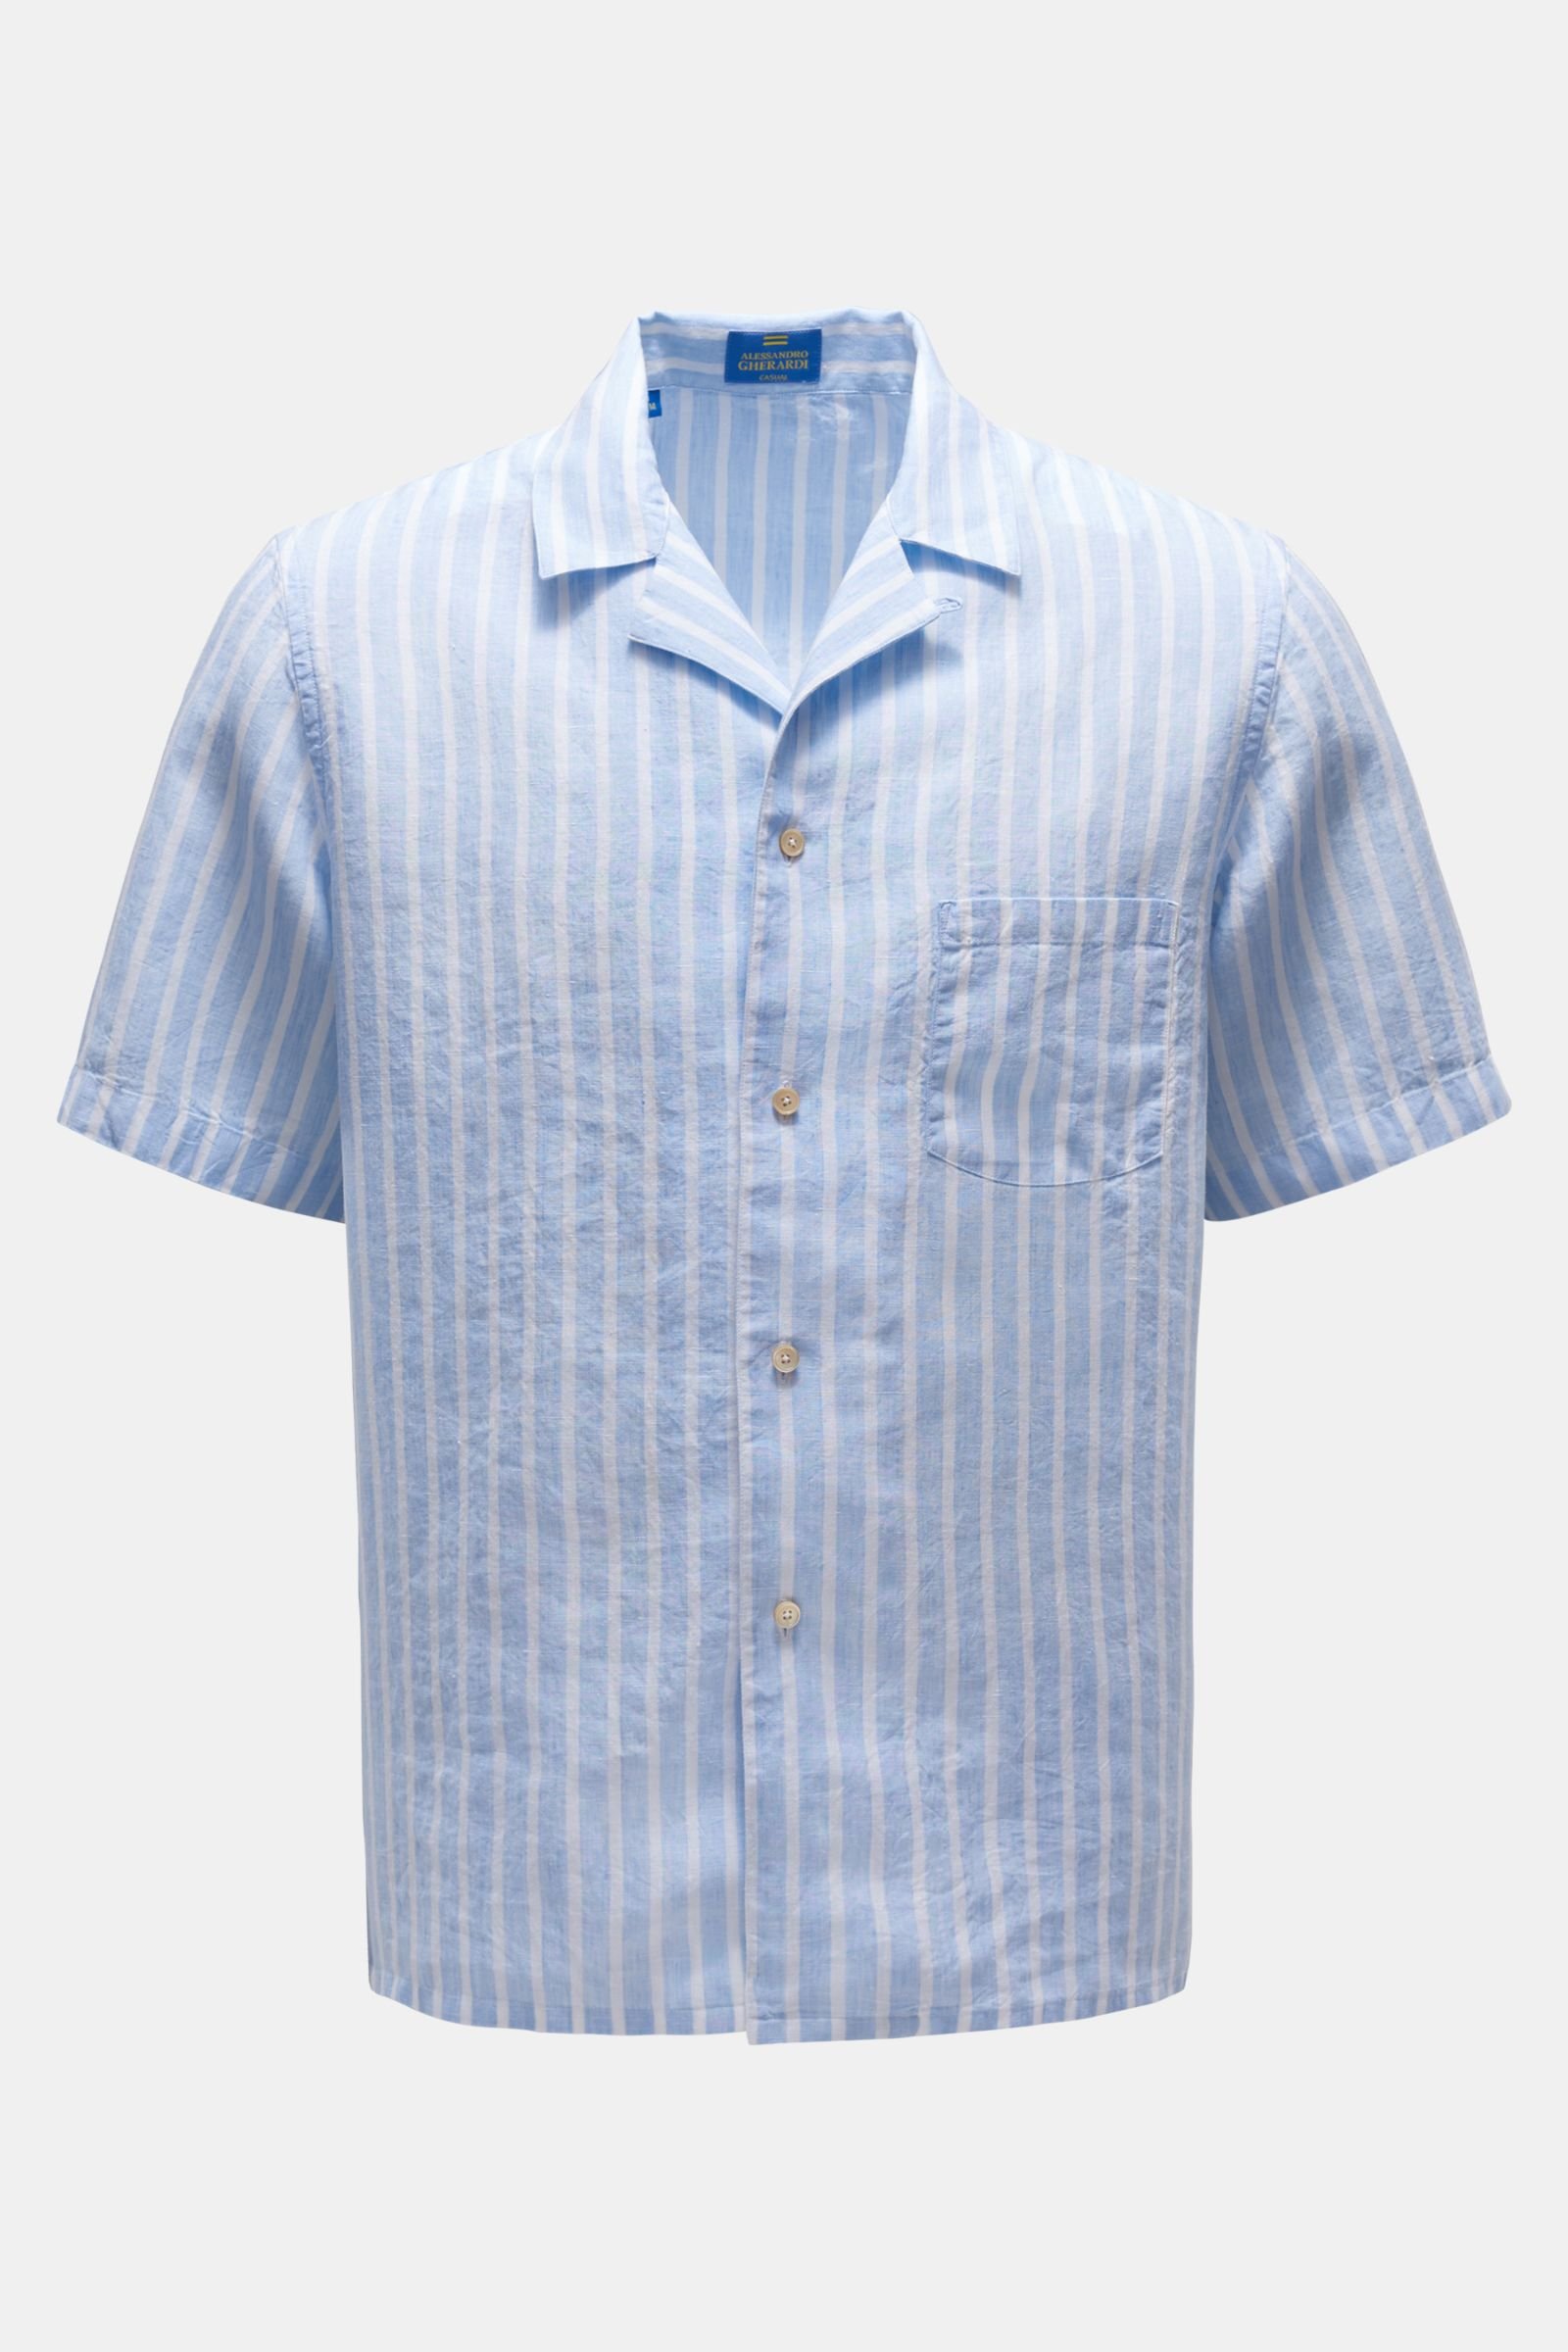 Leinen-Kurzarmhemd 'Miami' Kubanischer Kragen hellblau/weiß gestreift